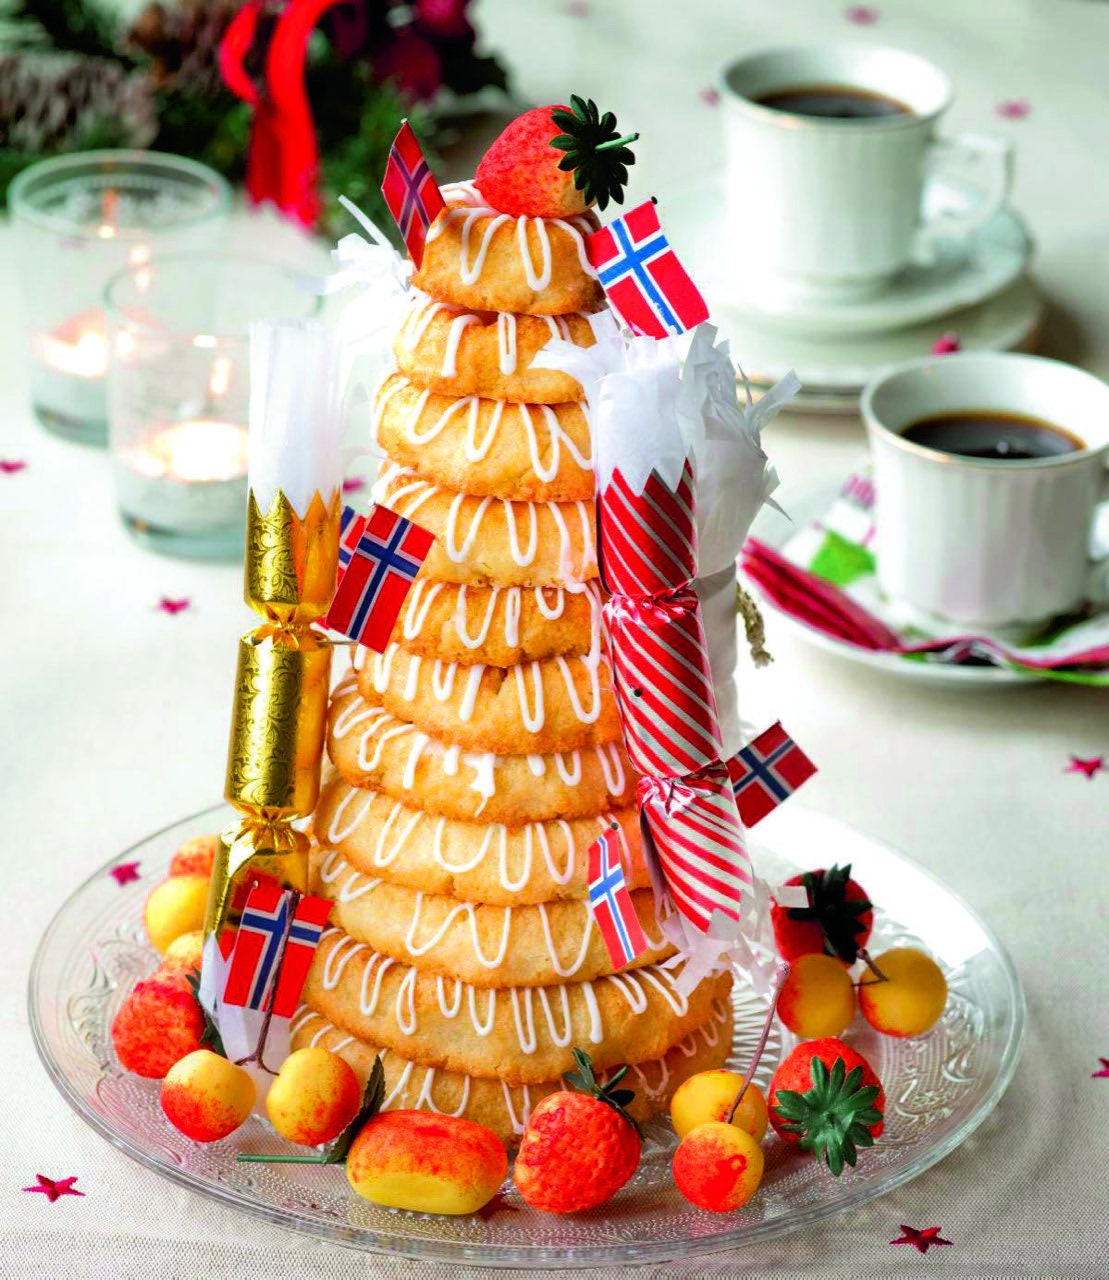 Kransekake Cake Pans Scandinavian Wedding Molds/Form Hoyang of Norway 6  Rings